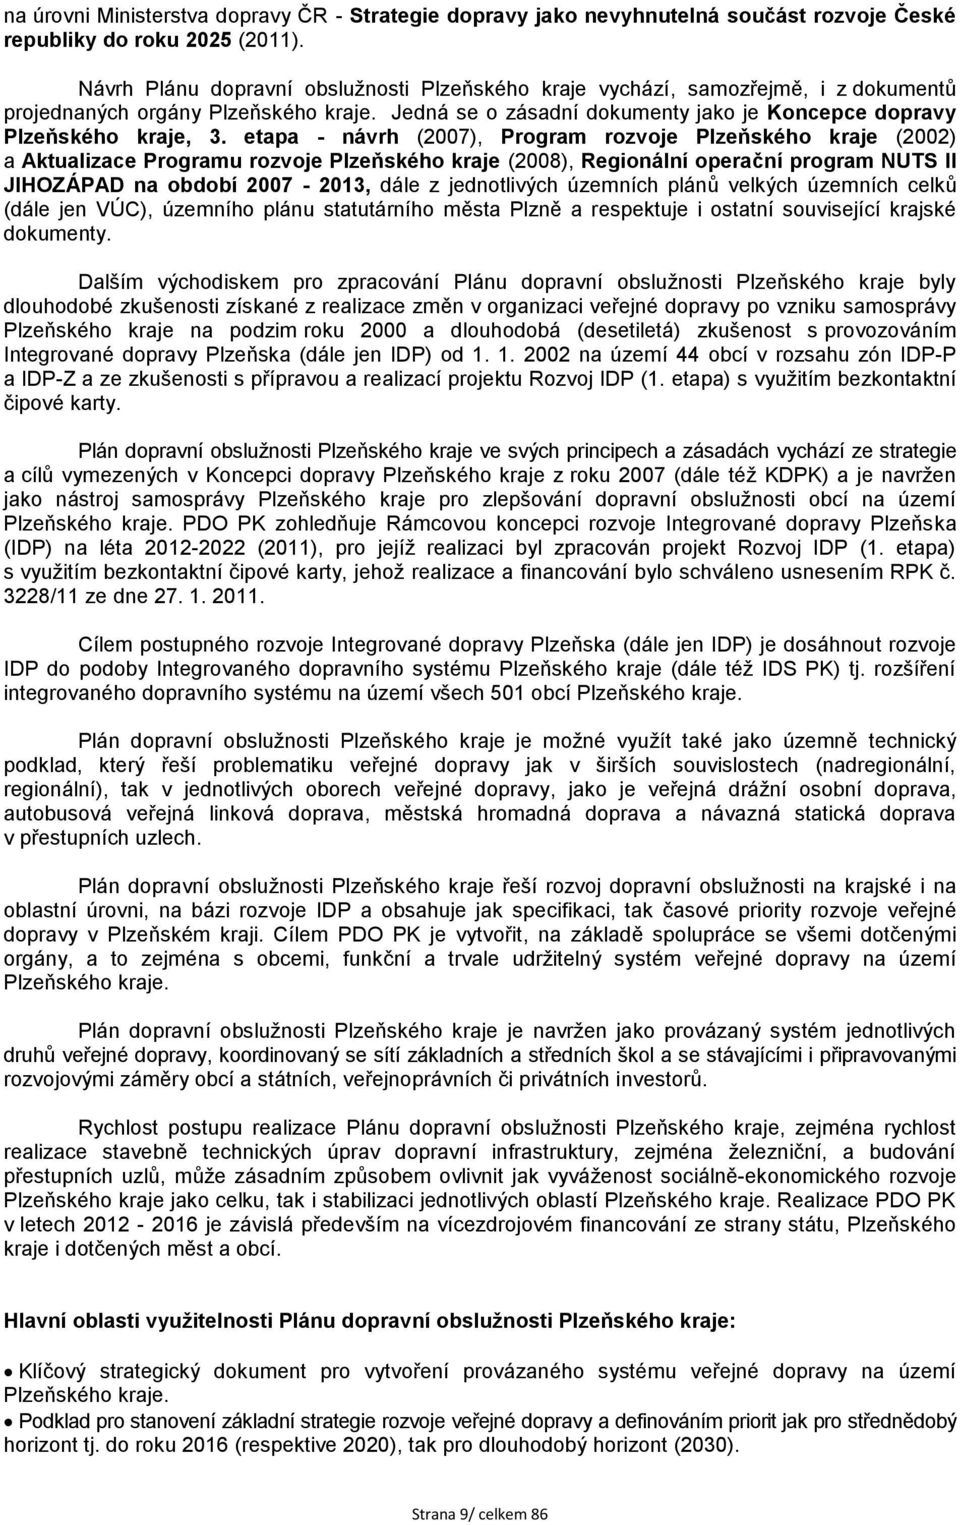 etapa - návrh (2007), Program rozvoje Plzeňského kraje (2002) a Aktualizace Programu rozvoje Plzeňského kraje (2008), Regionální operační program NUTS II JIHOZÁPAD na období 2007-2013, dále z